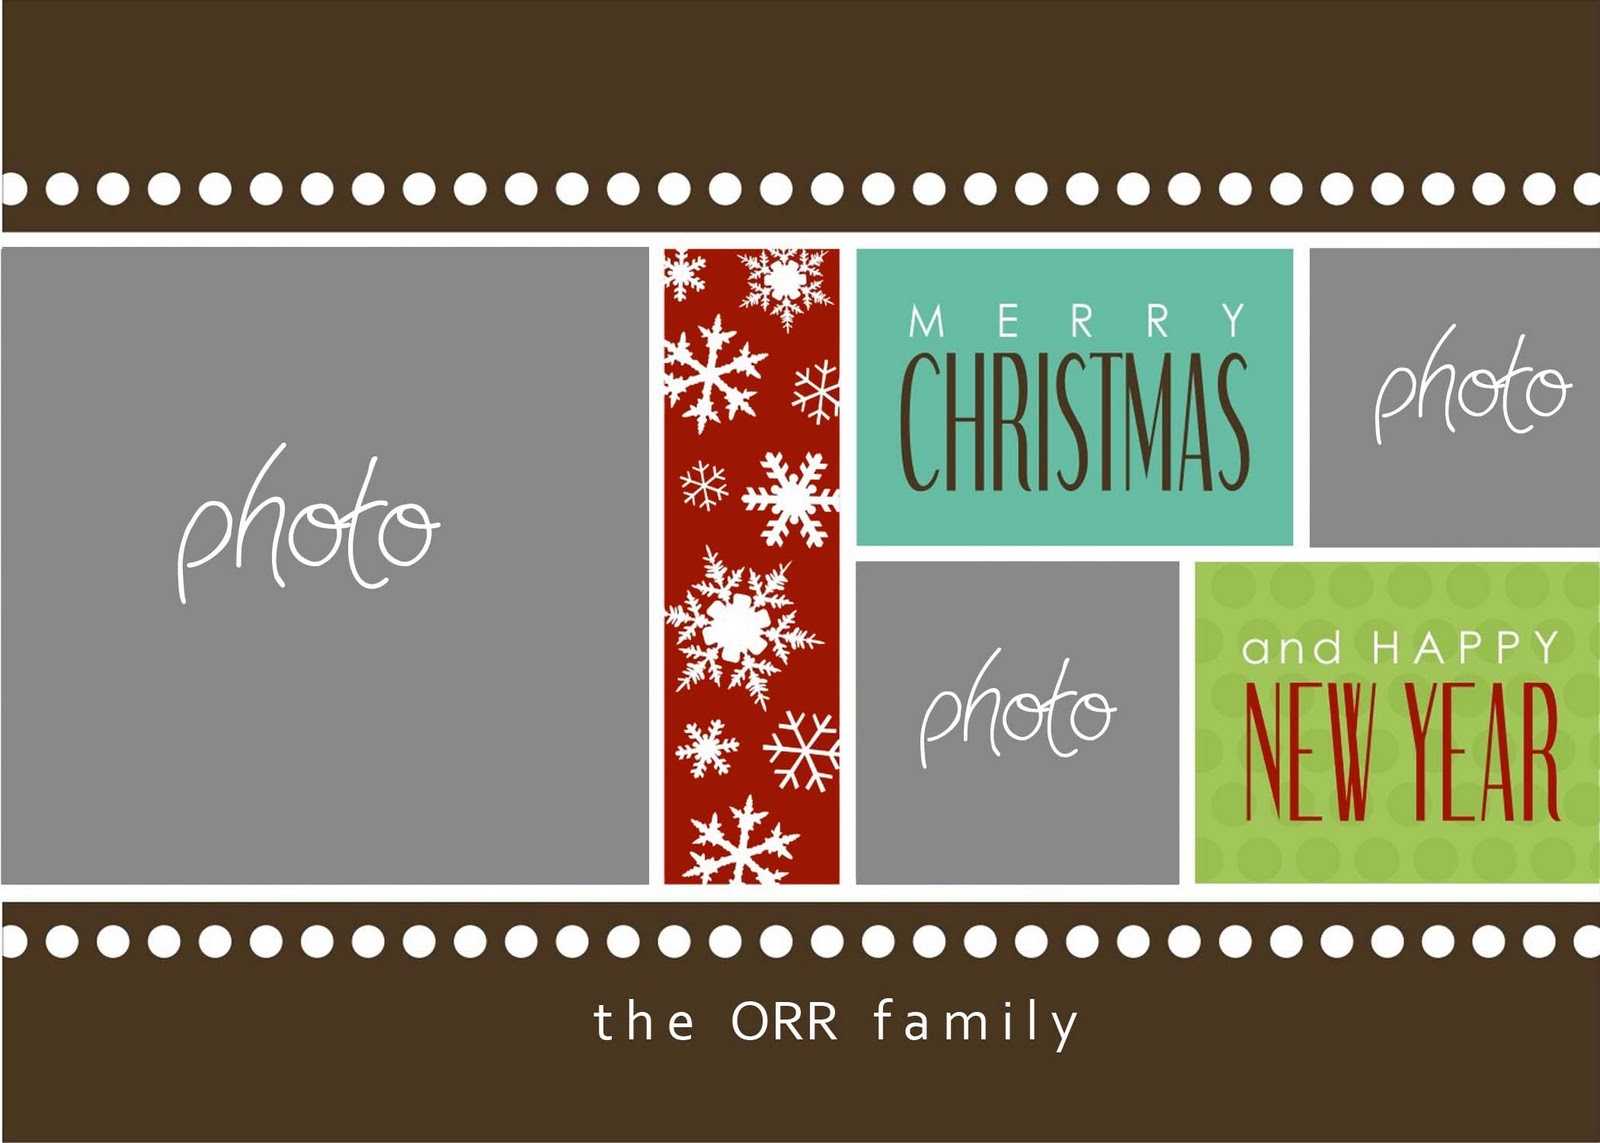 Christmas Cards Templates Photoshop ] - Christmas Card In Christmas Photo Card Templates Photoshop